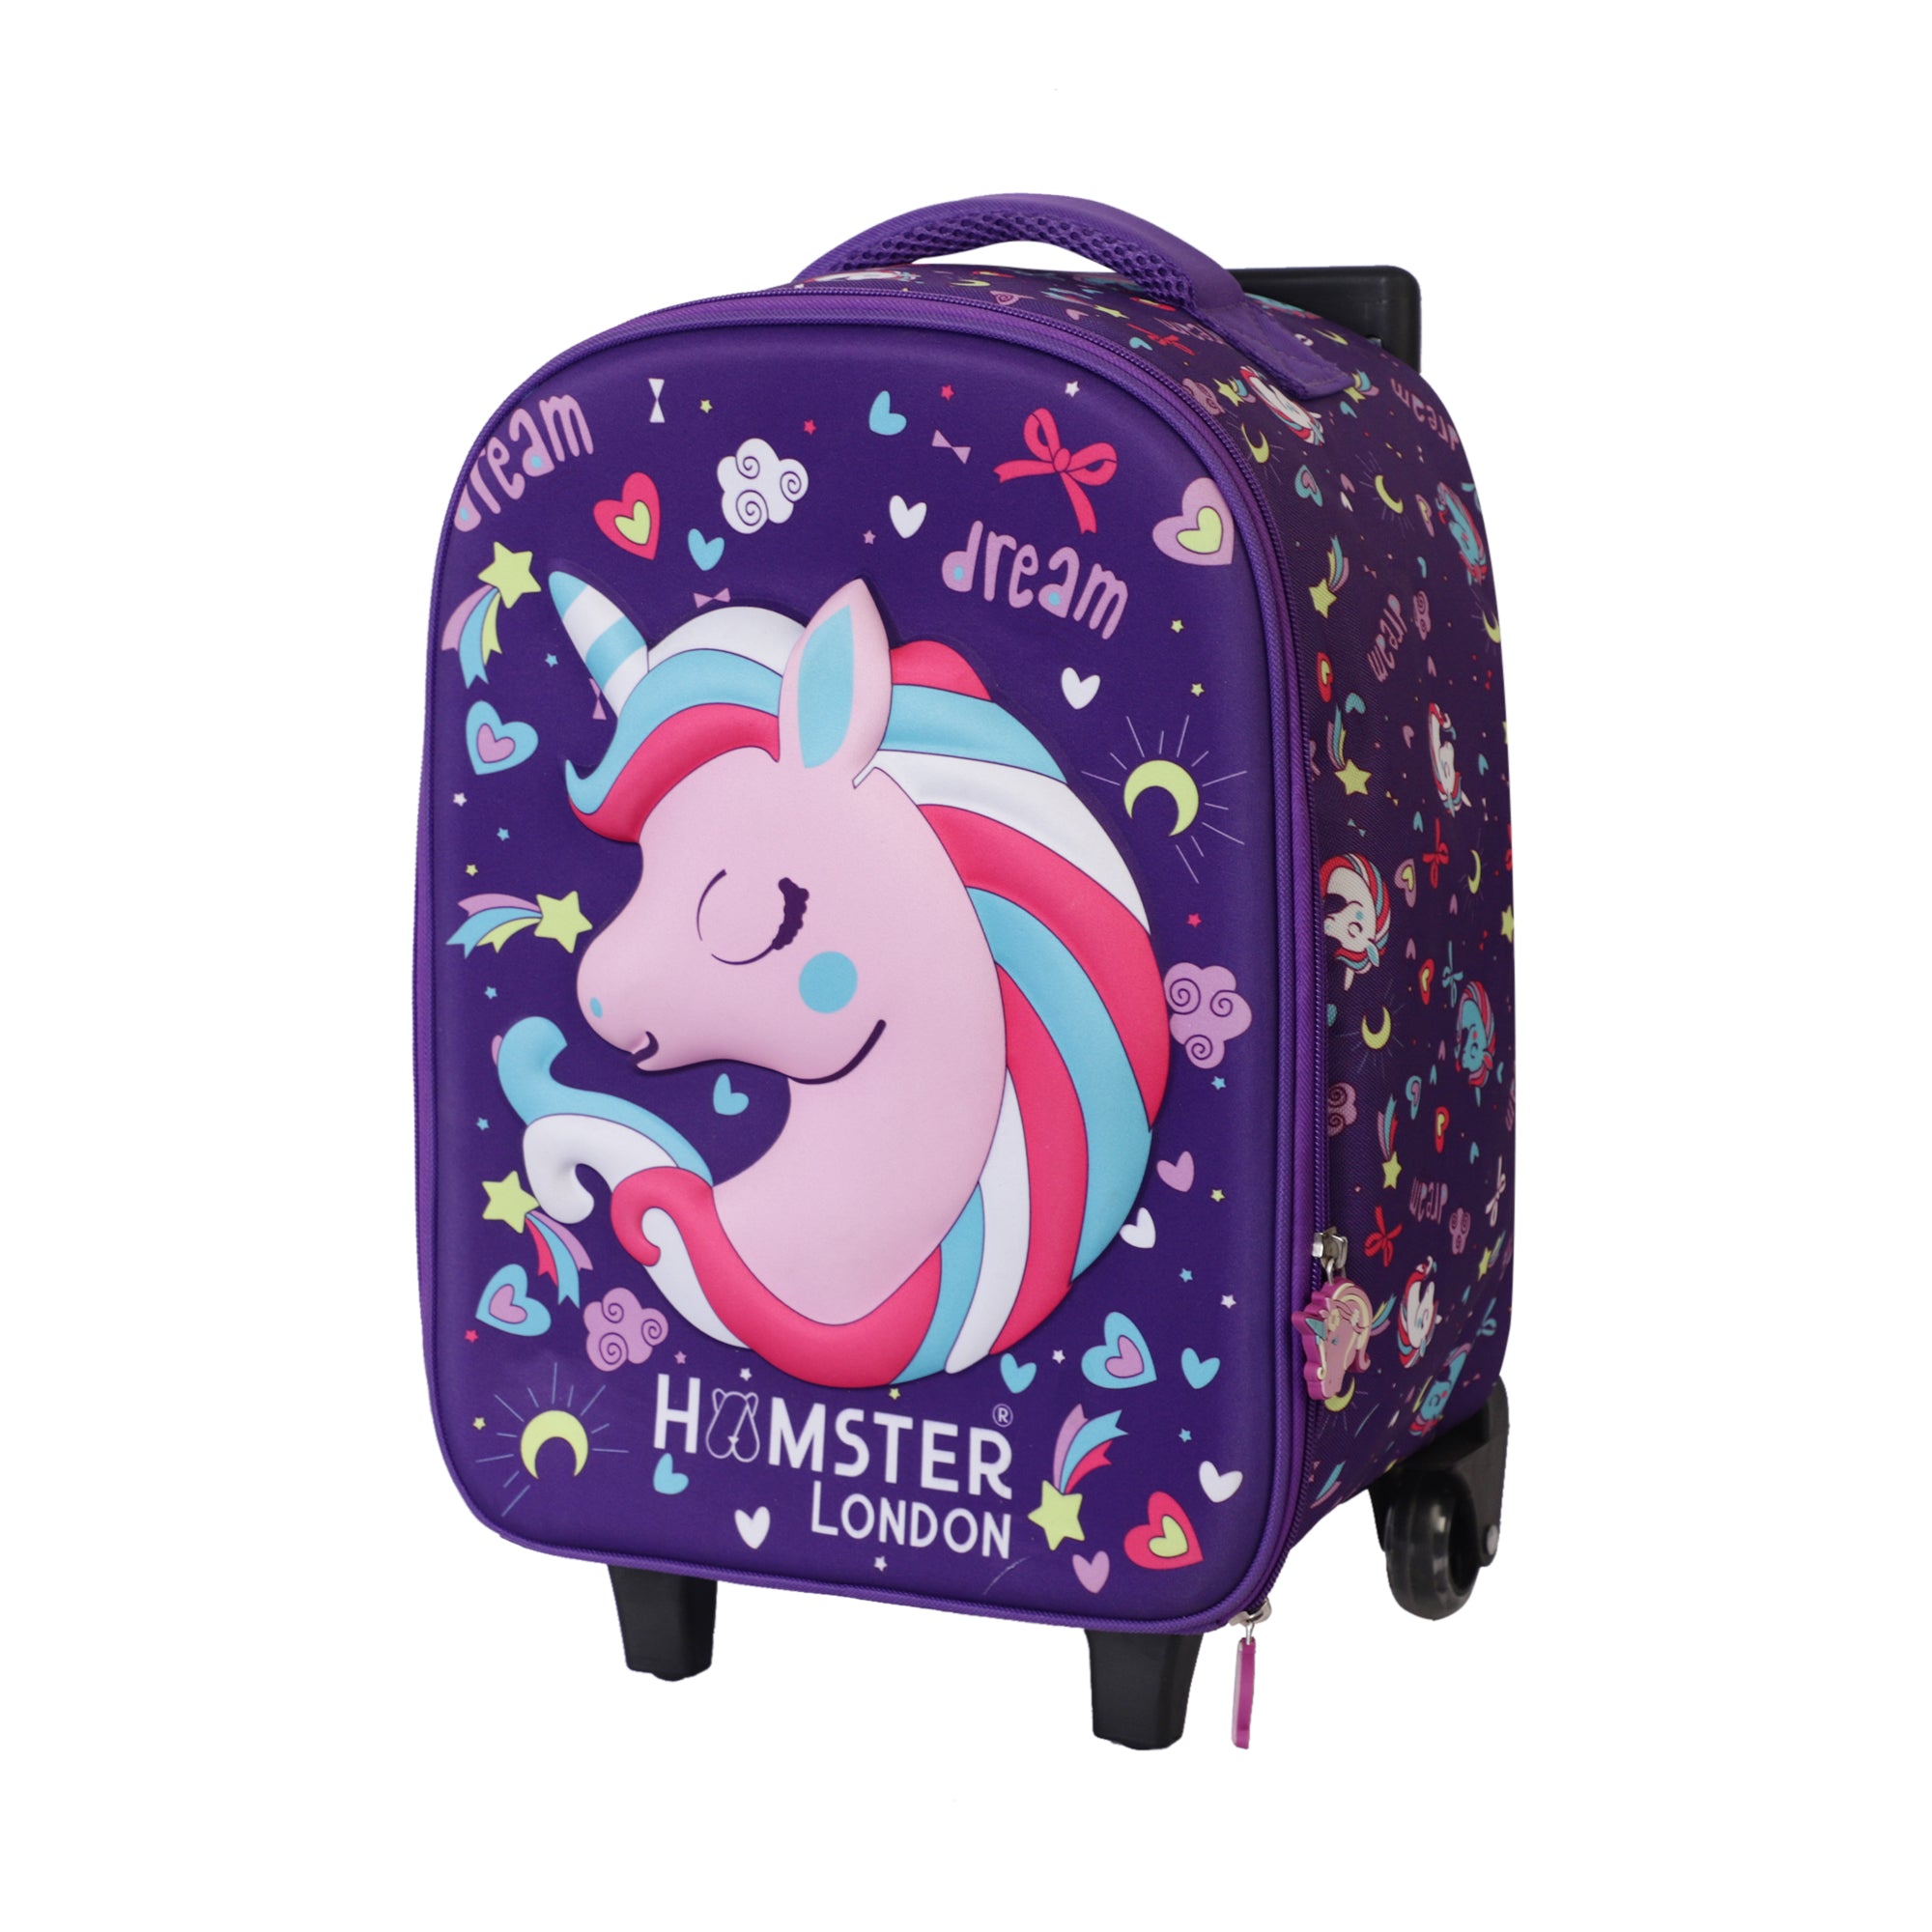 HL BTS Jumbo  Suitcase Purple Unicorn